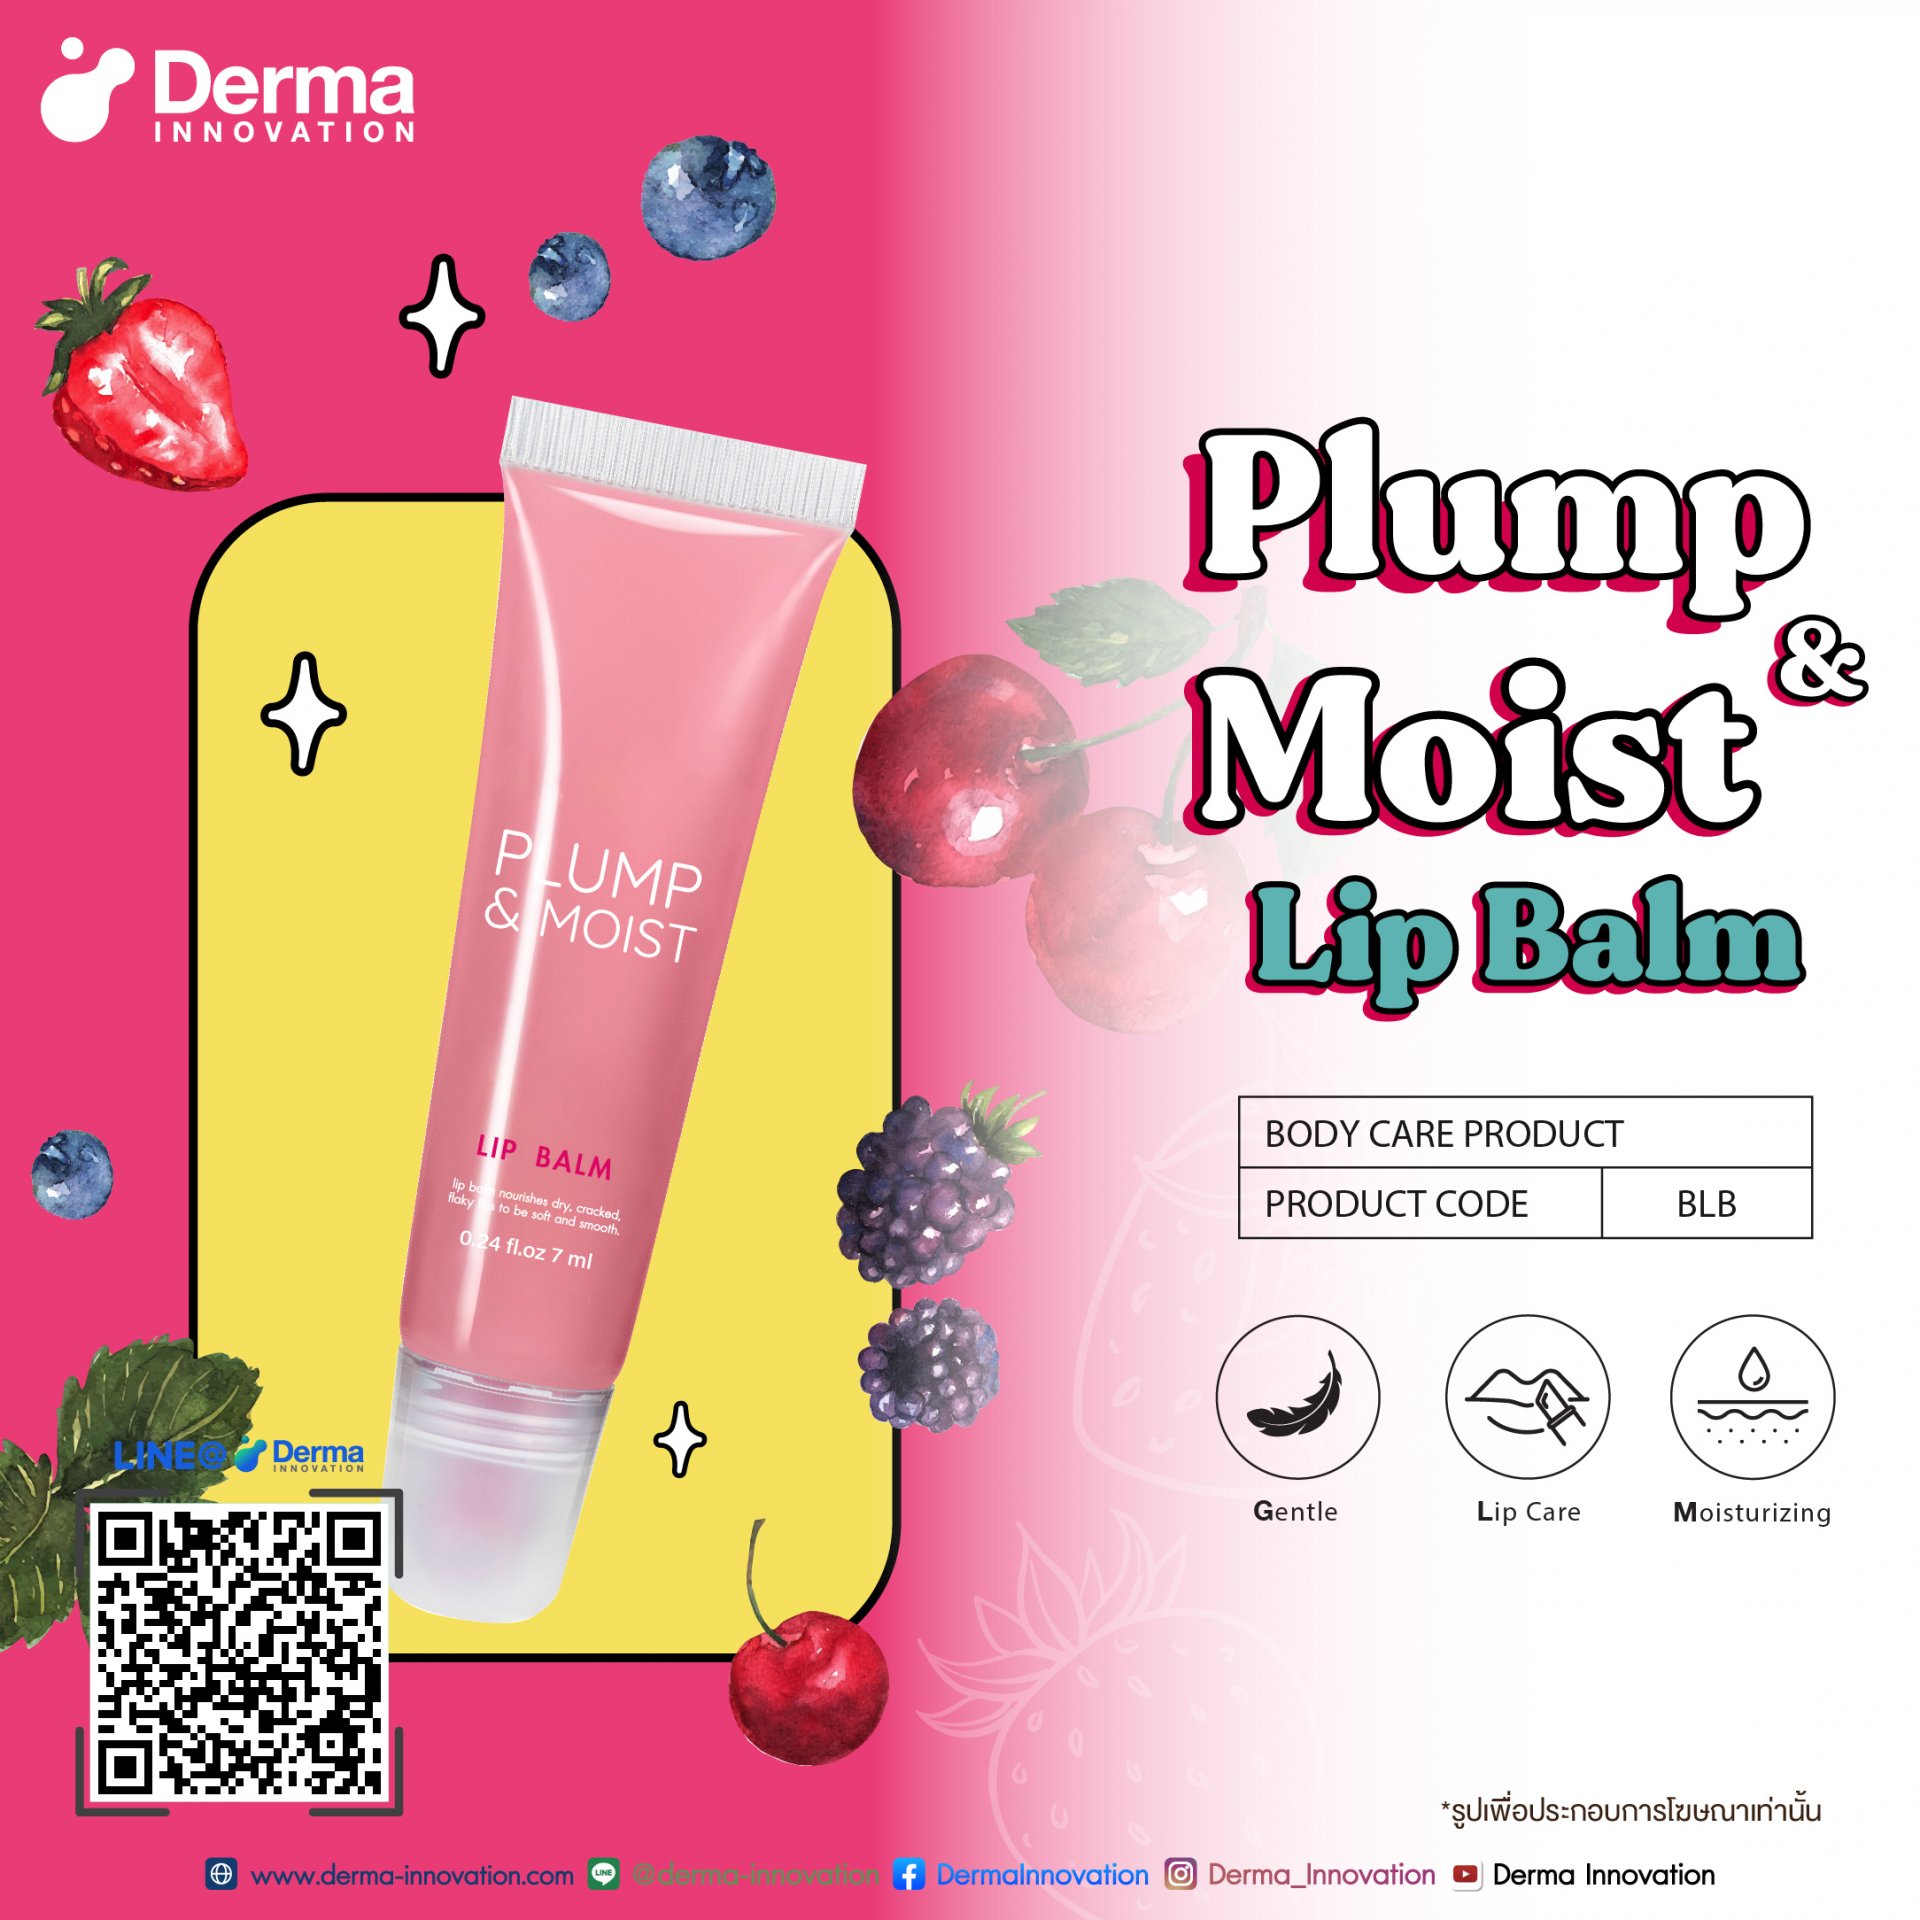 Plump & Moist Lip Balm